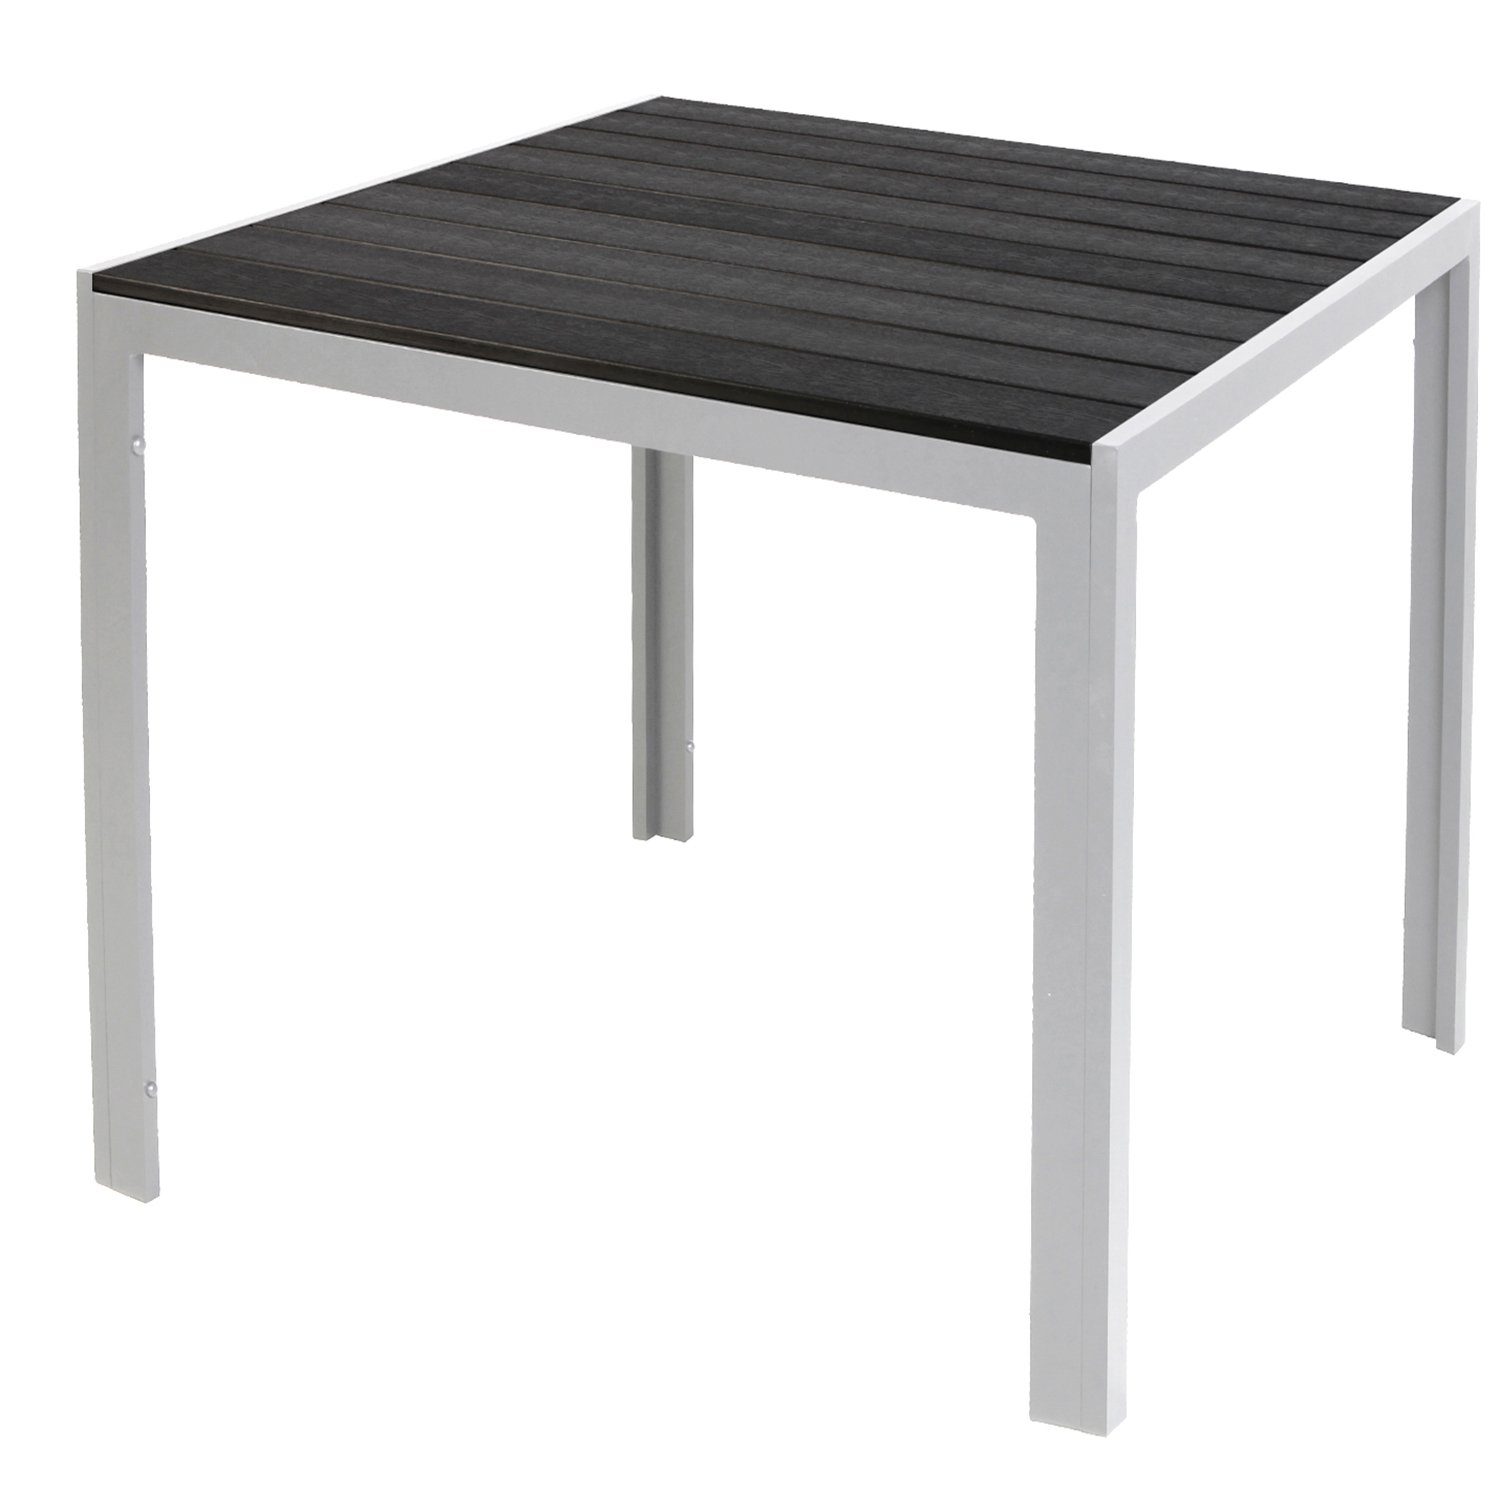 Mojawo Küchentisch Non-Wood Gartentisch Aluminium Silber / Schwarz 90x90cm